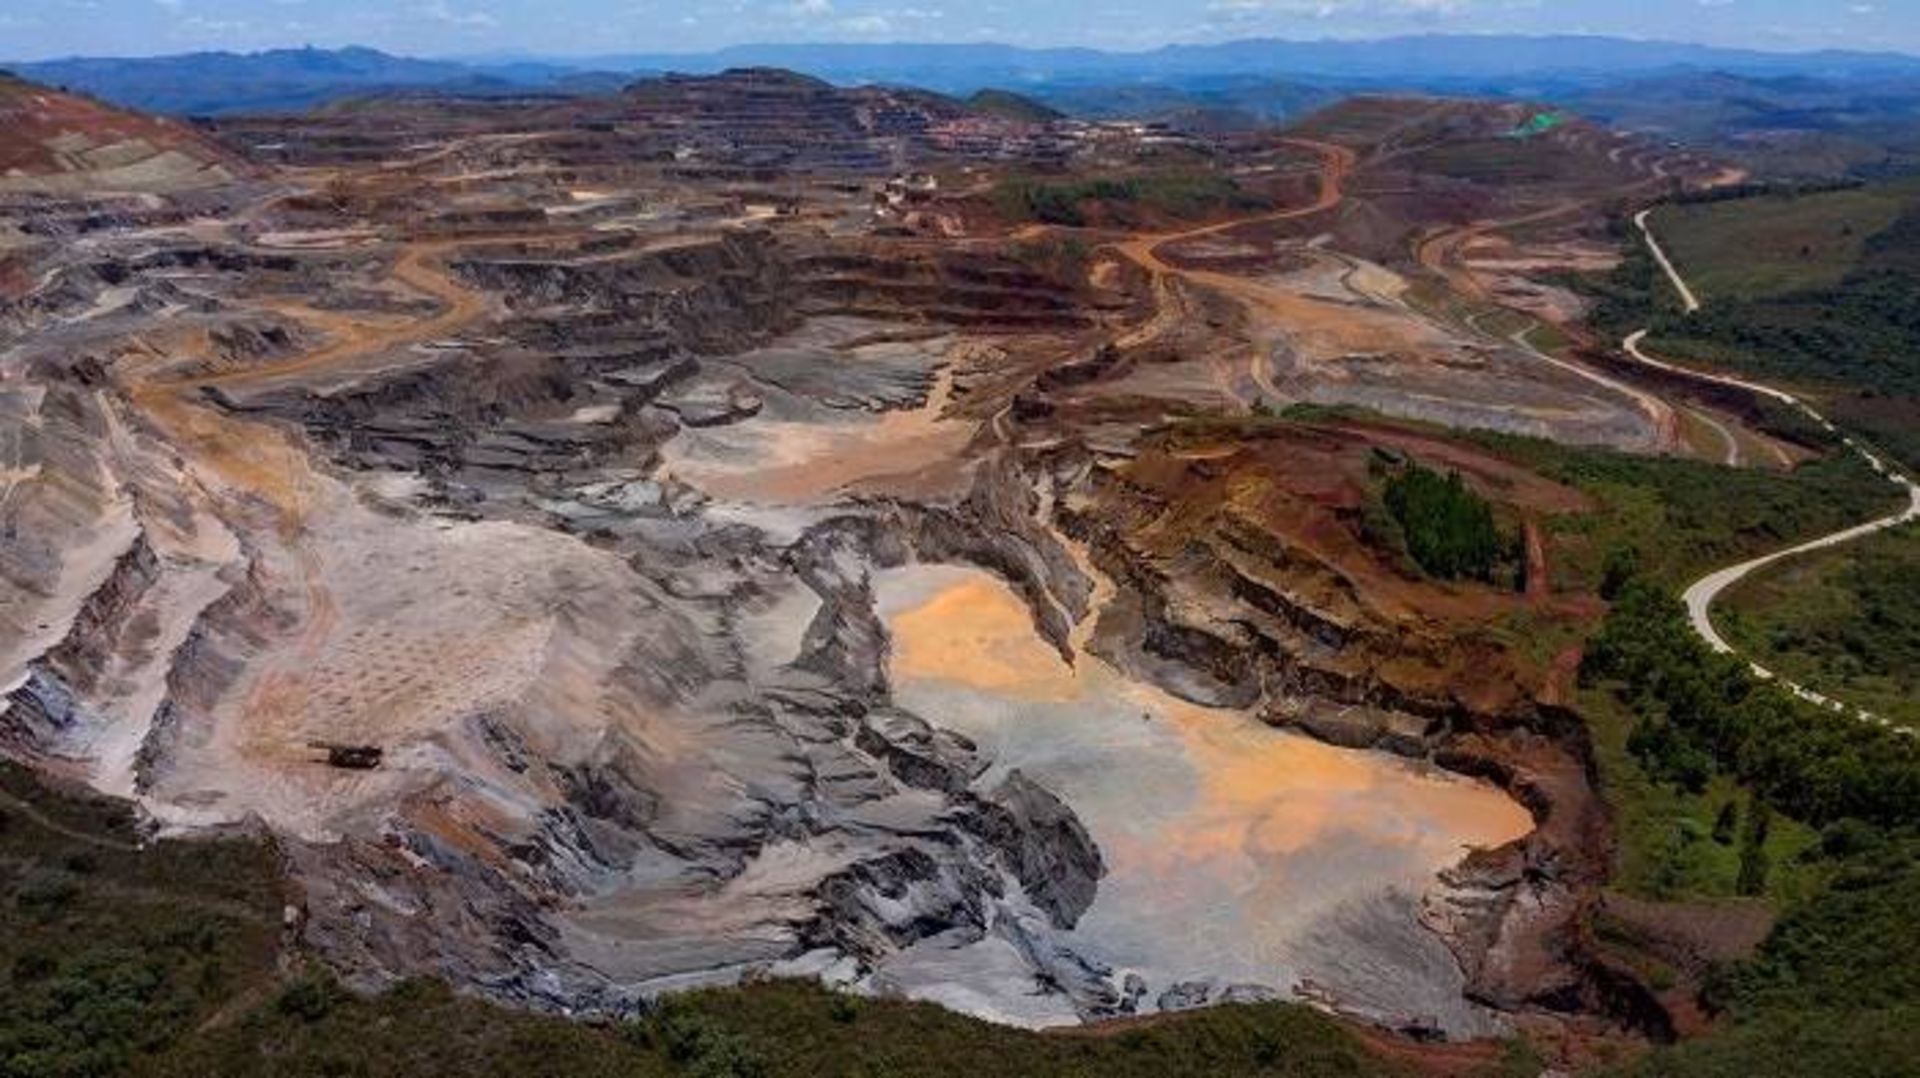 معدن استخراج آهن آلتو باندیرا / Alto Bandeira iron ore mine